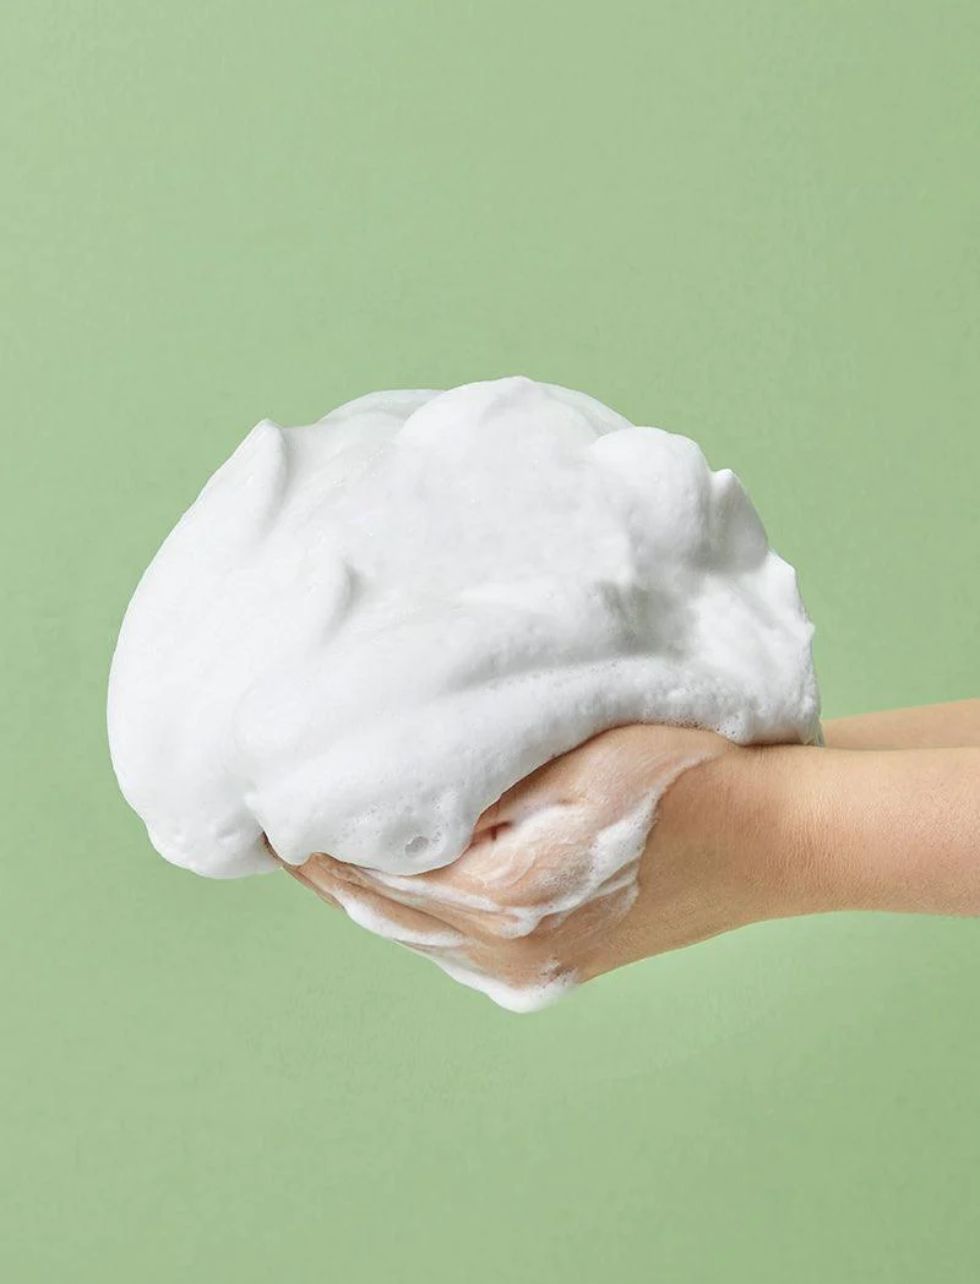 COSRX Pure Fit Cica Creamy Foam Cleanser